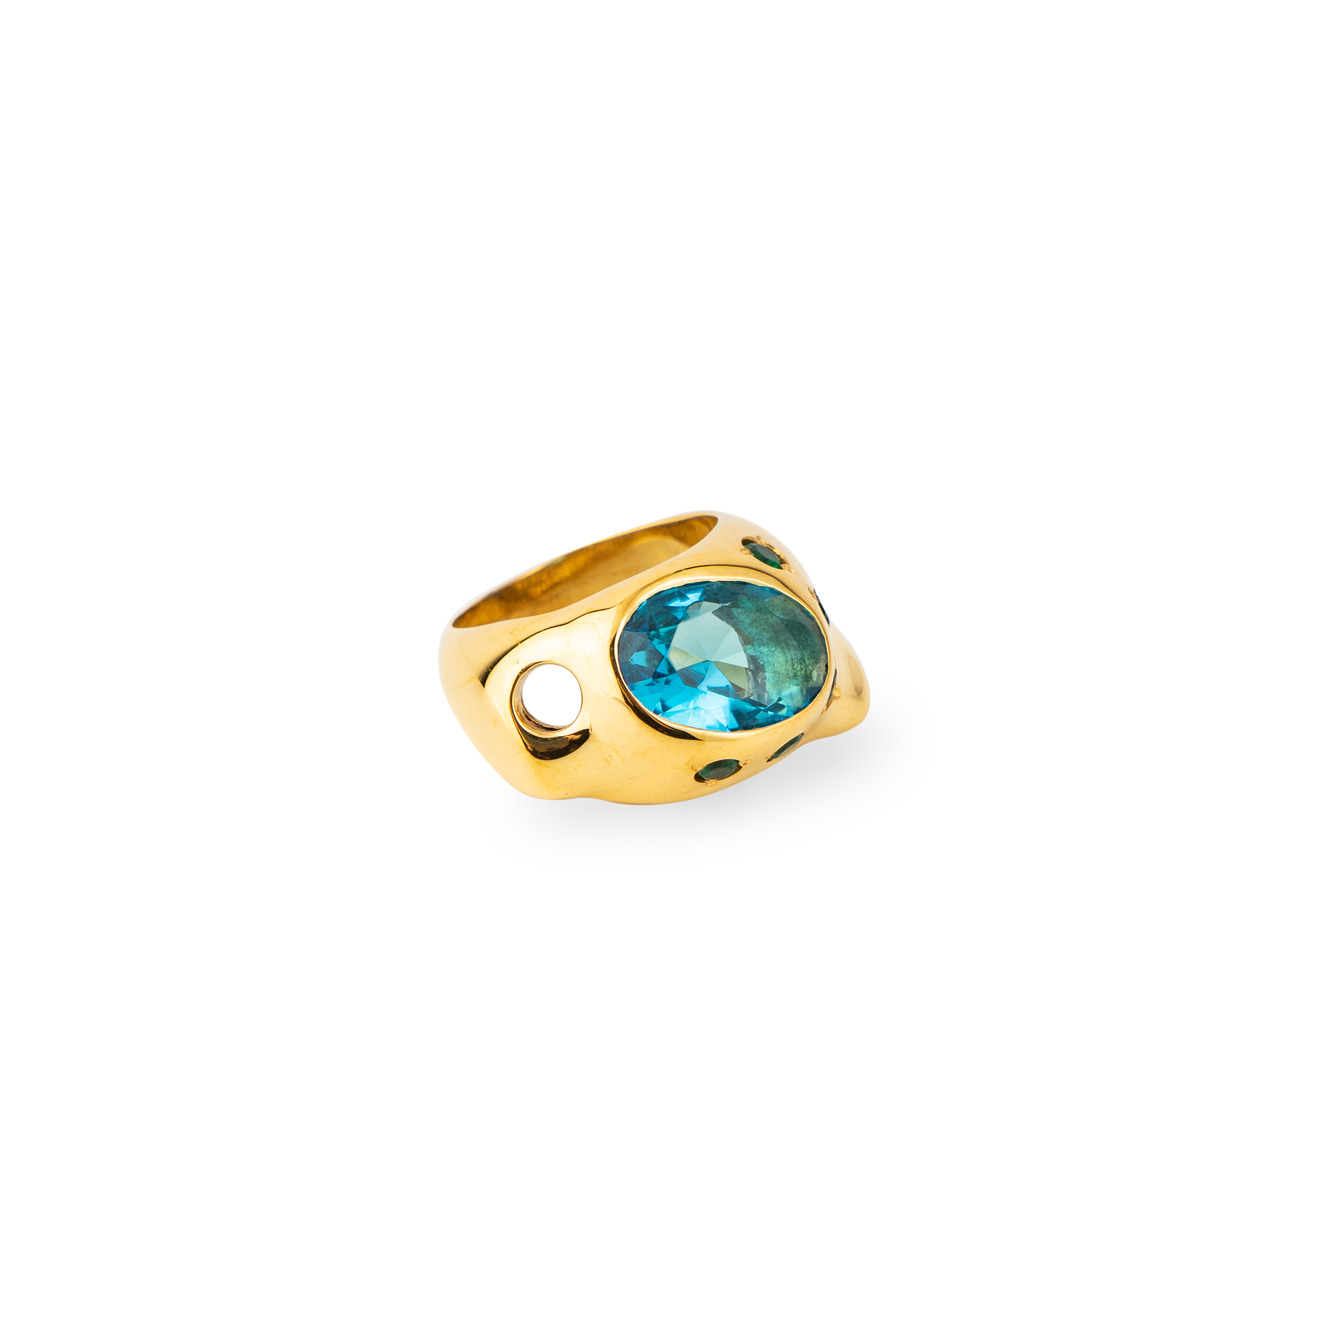 Janashia Золотистое кольцо Ava волнообразной формы со вставками из зеленых и голубого кристалла